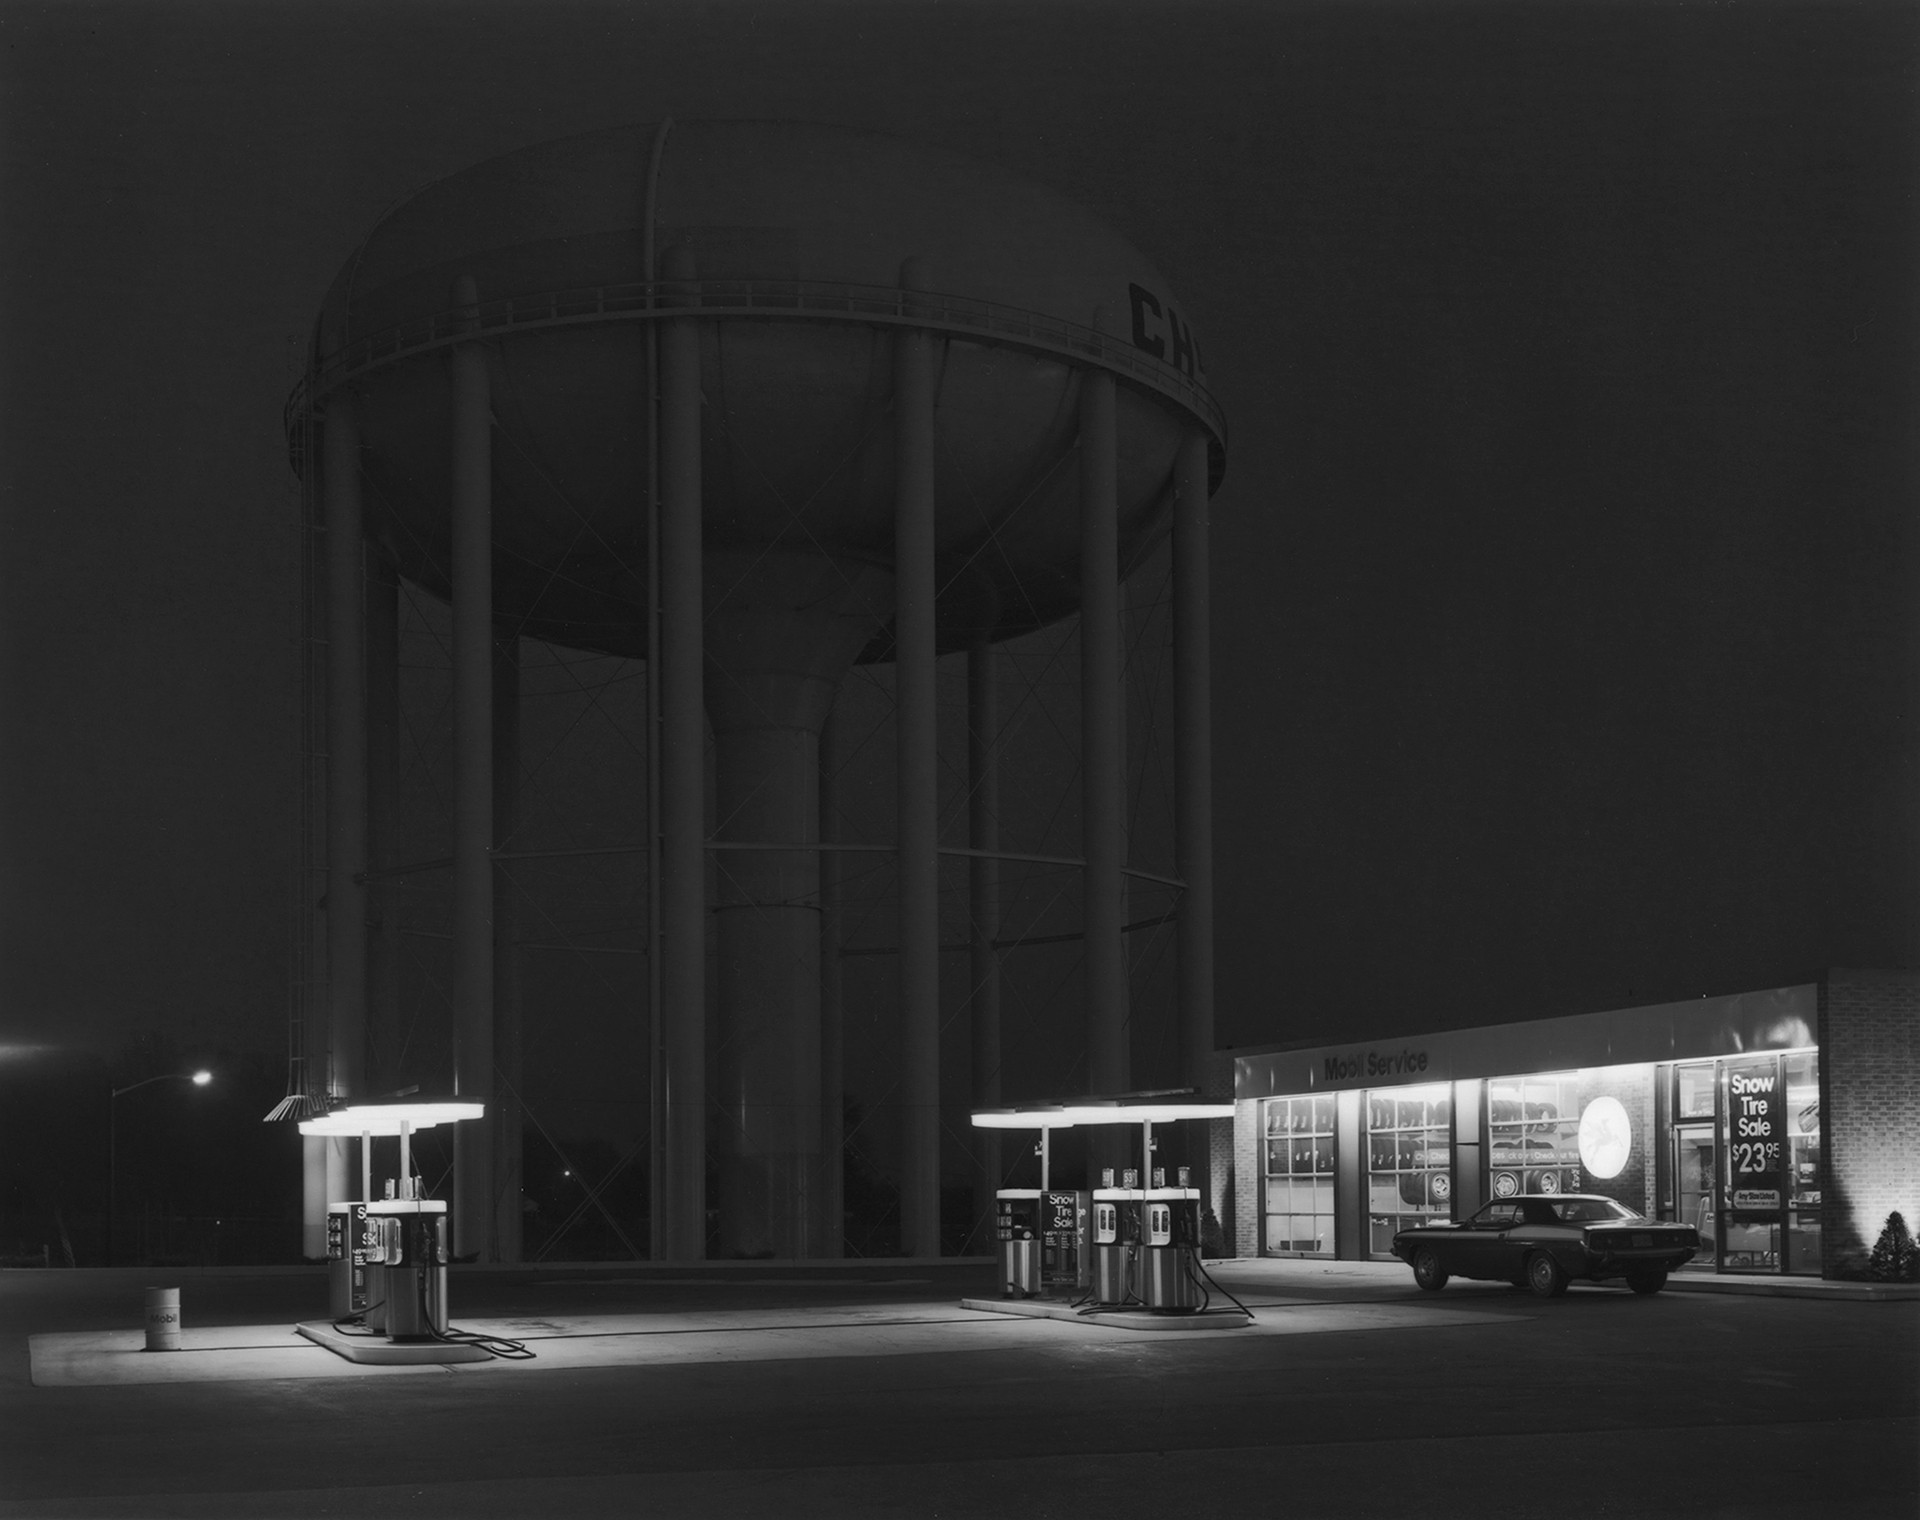 Petit's Mobil Station, 1974